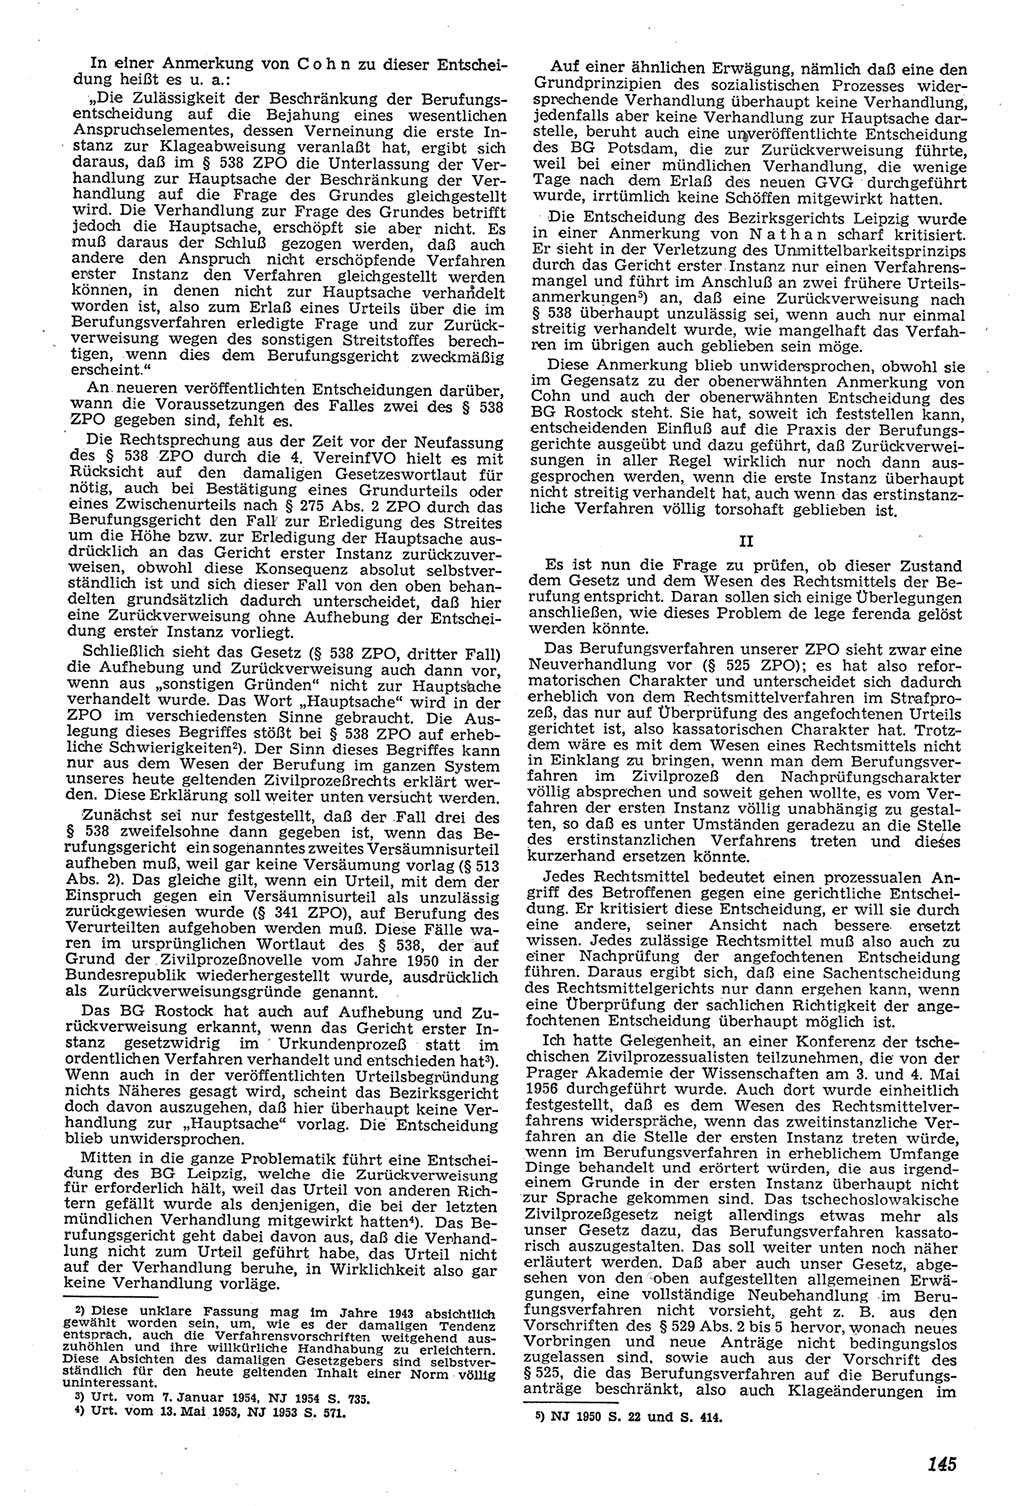 Neue Justiz (NJ), Zeitschrift für Recht und Rechtswissenschaft [Deutsche Demokratische Republik (DDR)], 11. Jahrgang 1957, Seite 145 (NJ DDR 1957, S. 145)